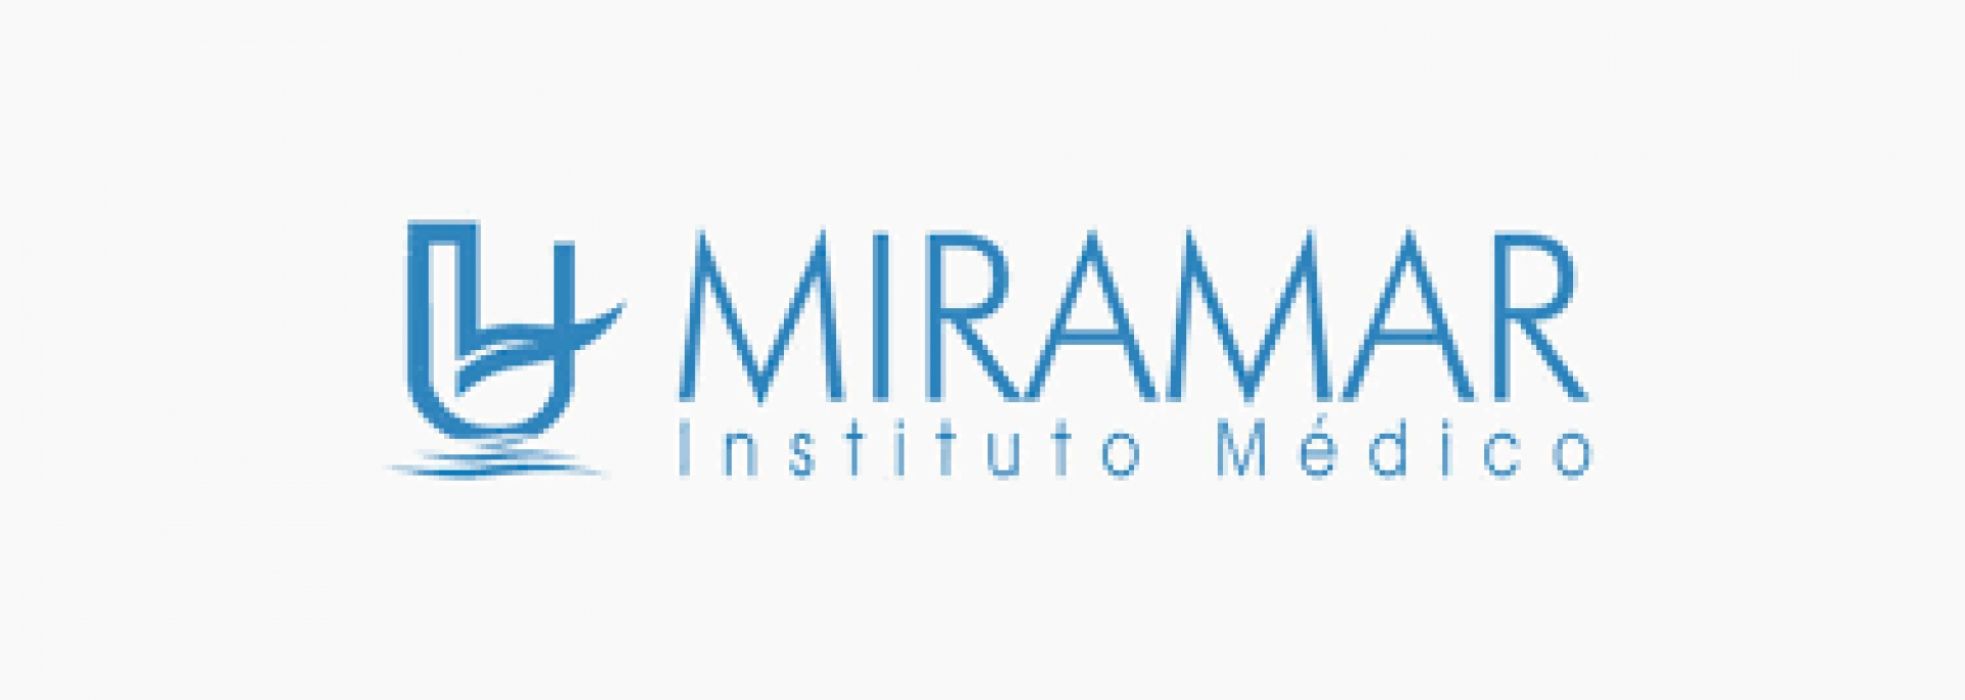 Instituto Médico Miramar